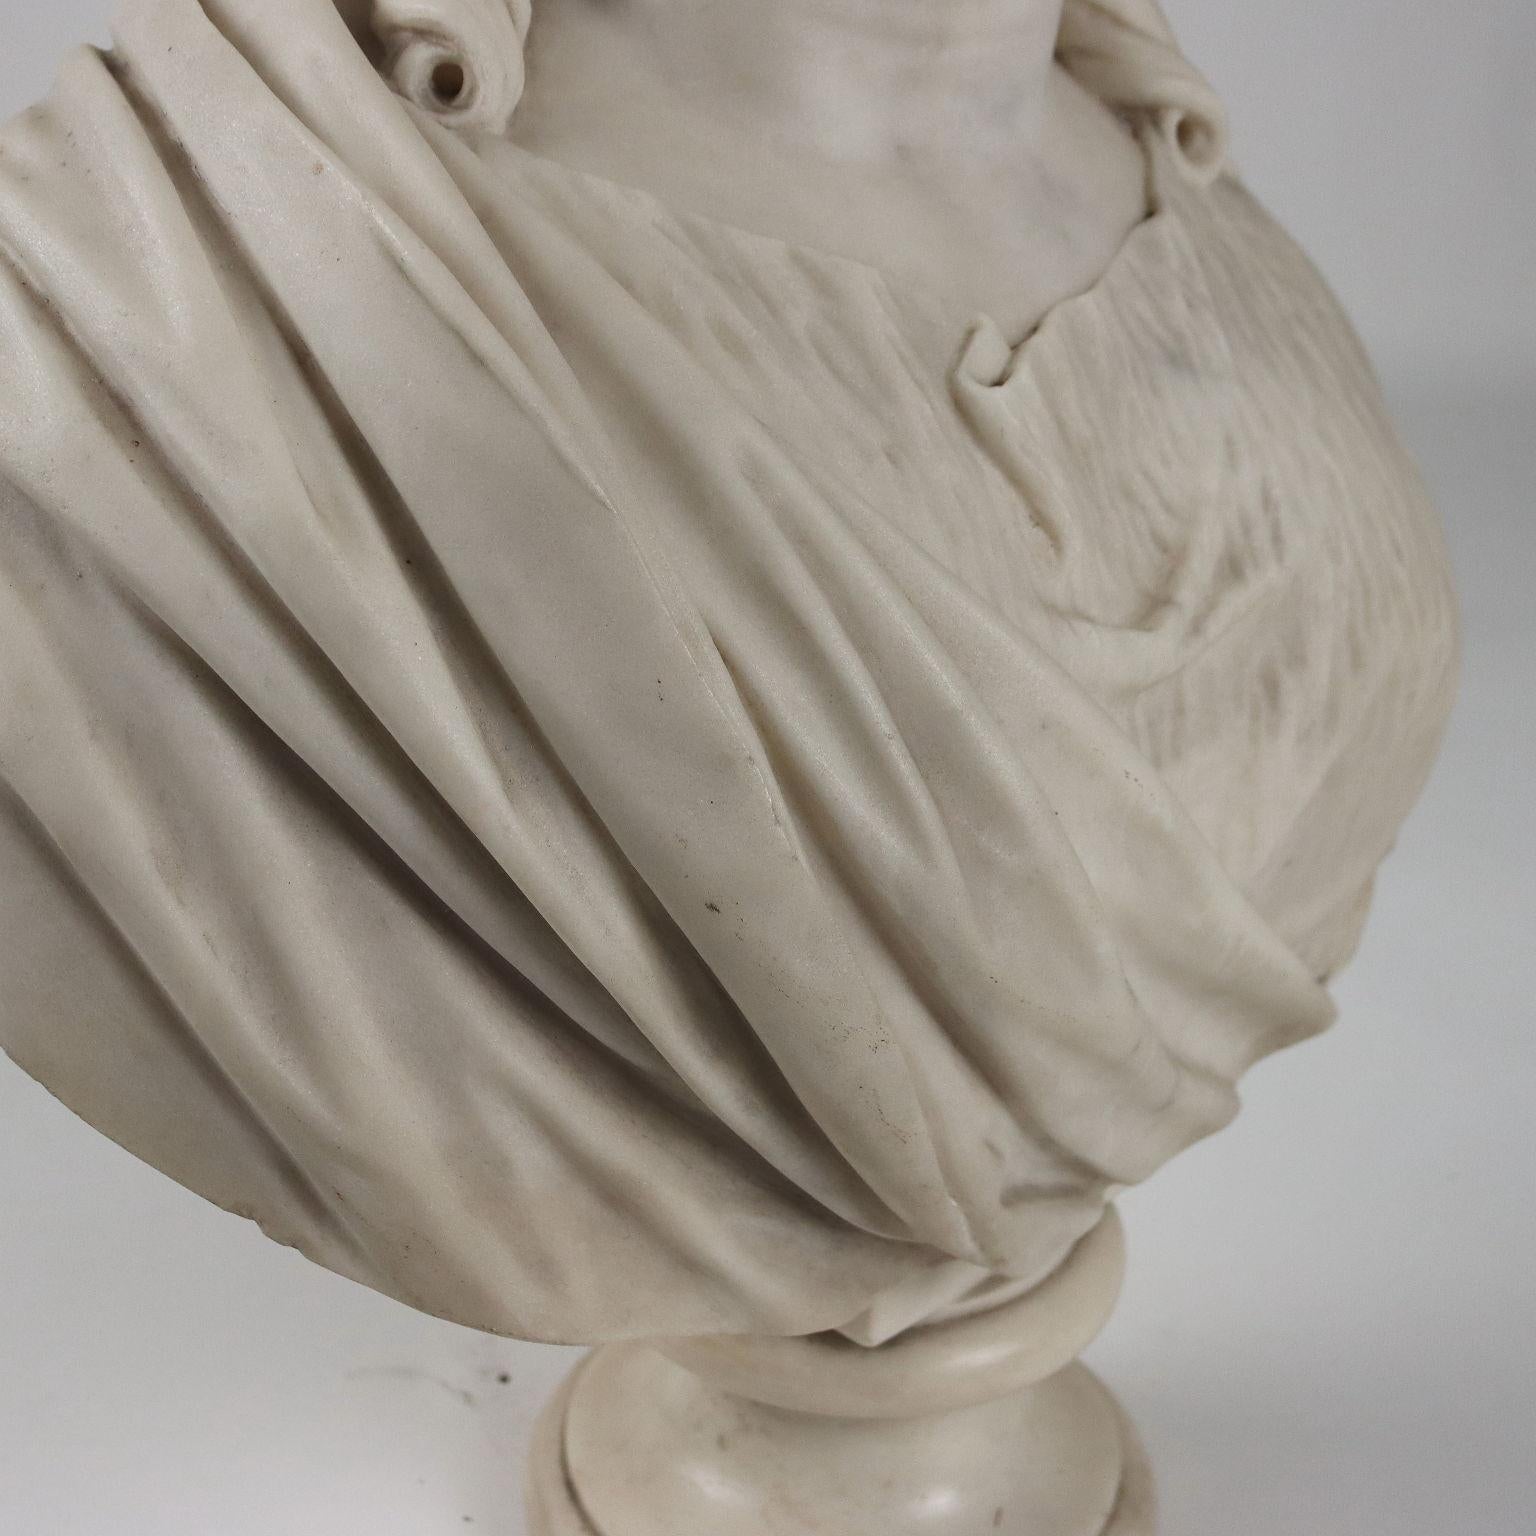 A. Della Bitta Sculpture White Marble Italy 1879 1